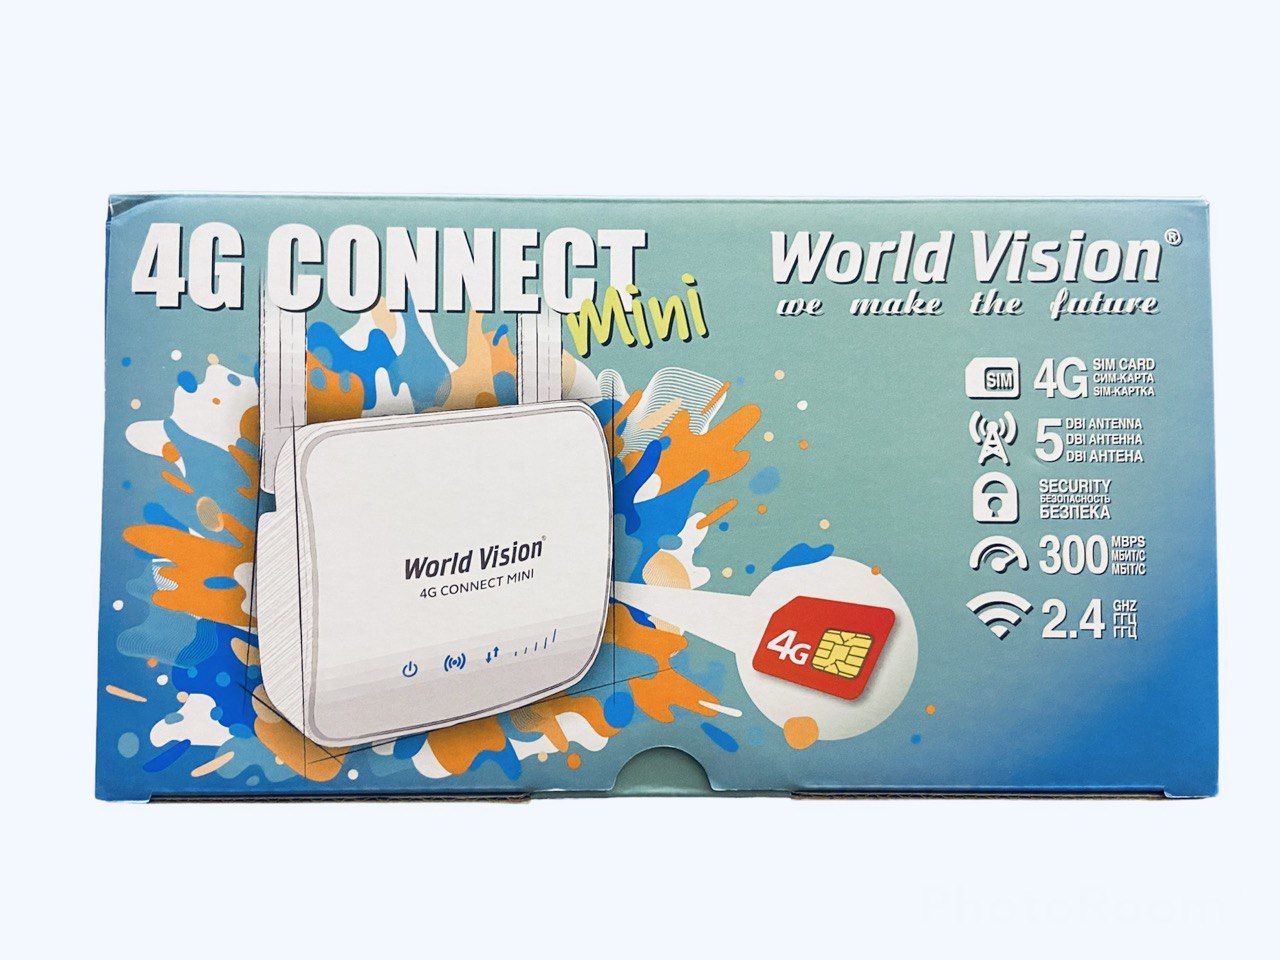 World vision 4g connect. World Vision 4g connect Mini. Роутер World Vision 4g connect. World Vision 4g connect Micro. World Vision 4g connect 2.